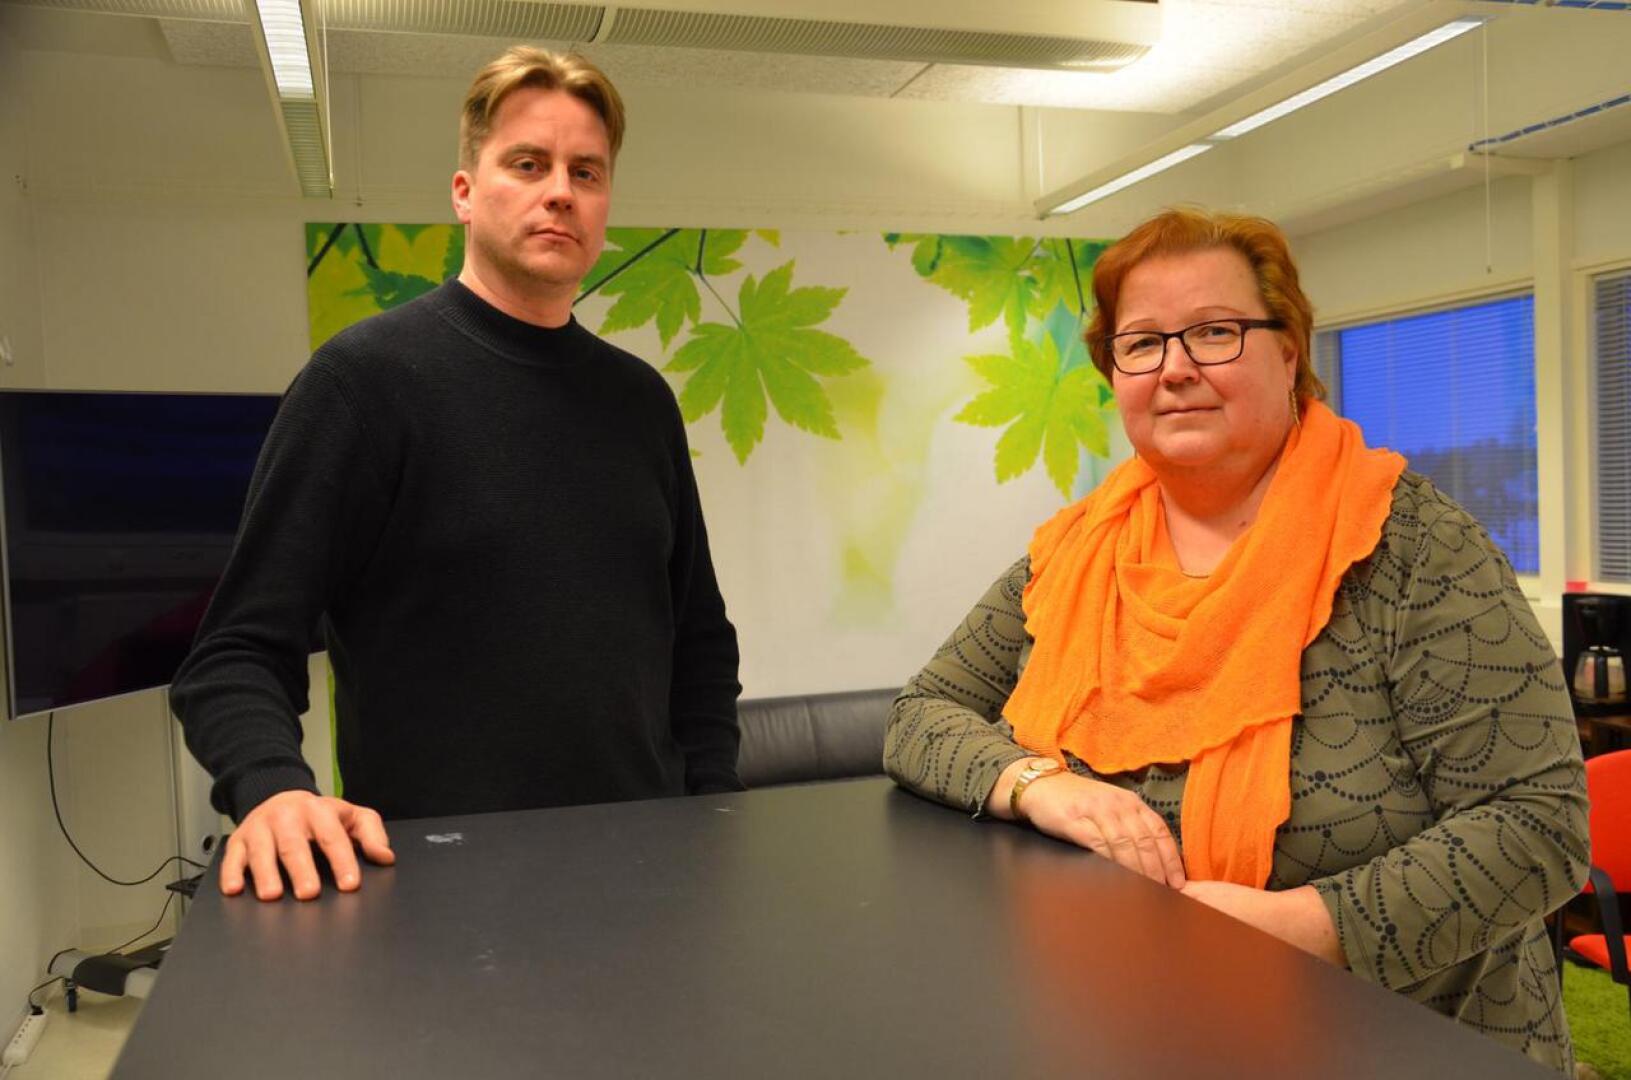 Nivalan Teollisuuskylä Oy:n kehitysjohtaja Kari Kutuniva ja toimitusjohtaja Kaisa Liinamaa esittelevät teknologiatalo Nitekissä viime vuonna avattuja vuokrattavia työtiloja.